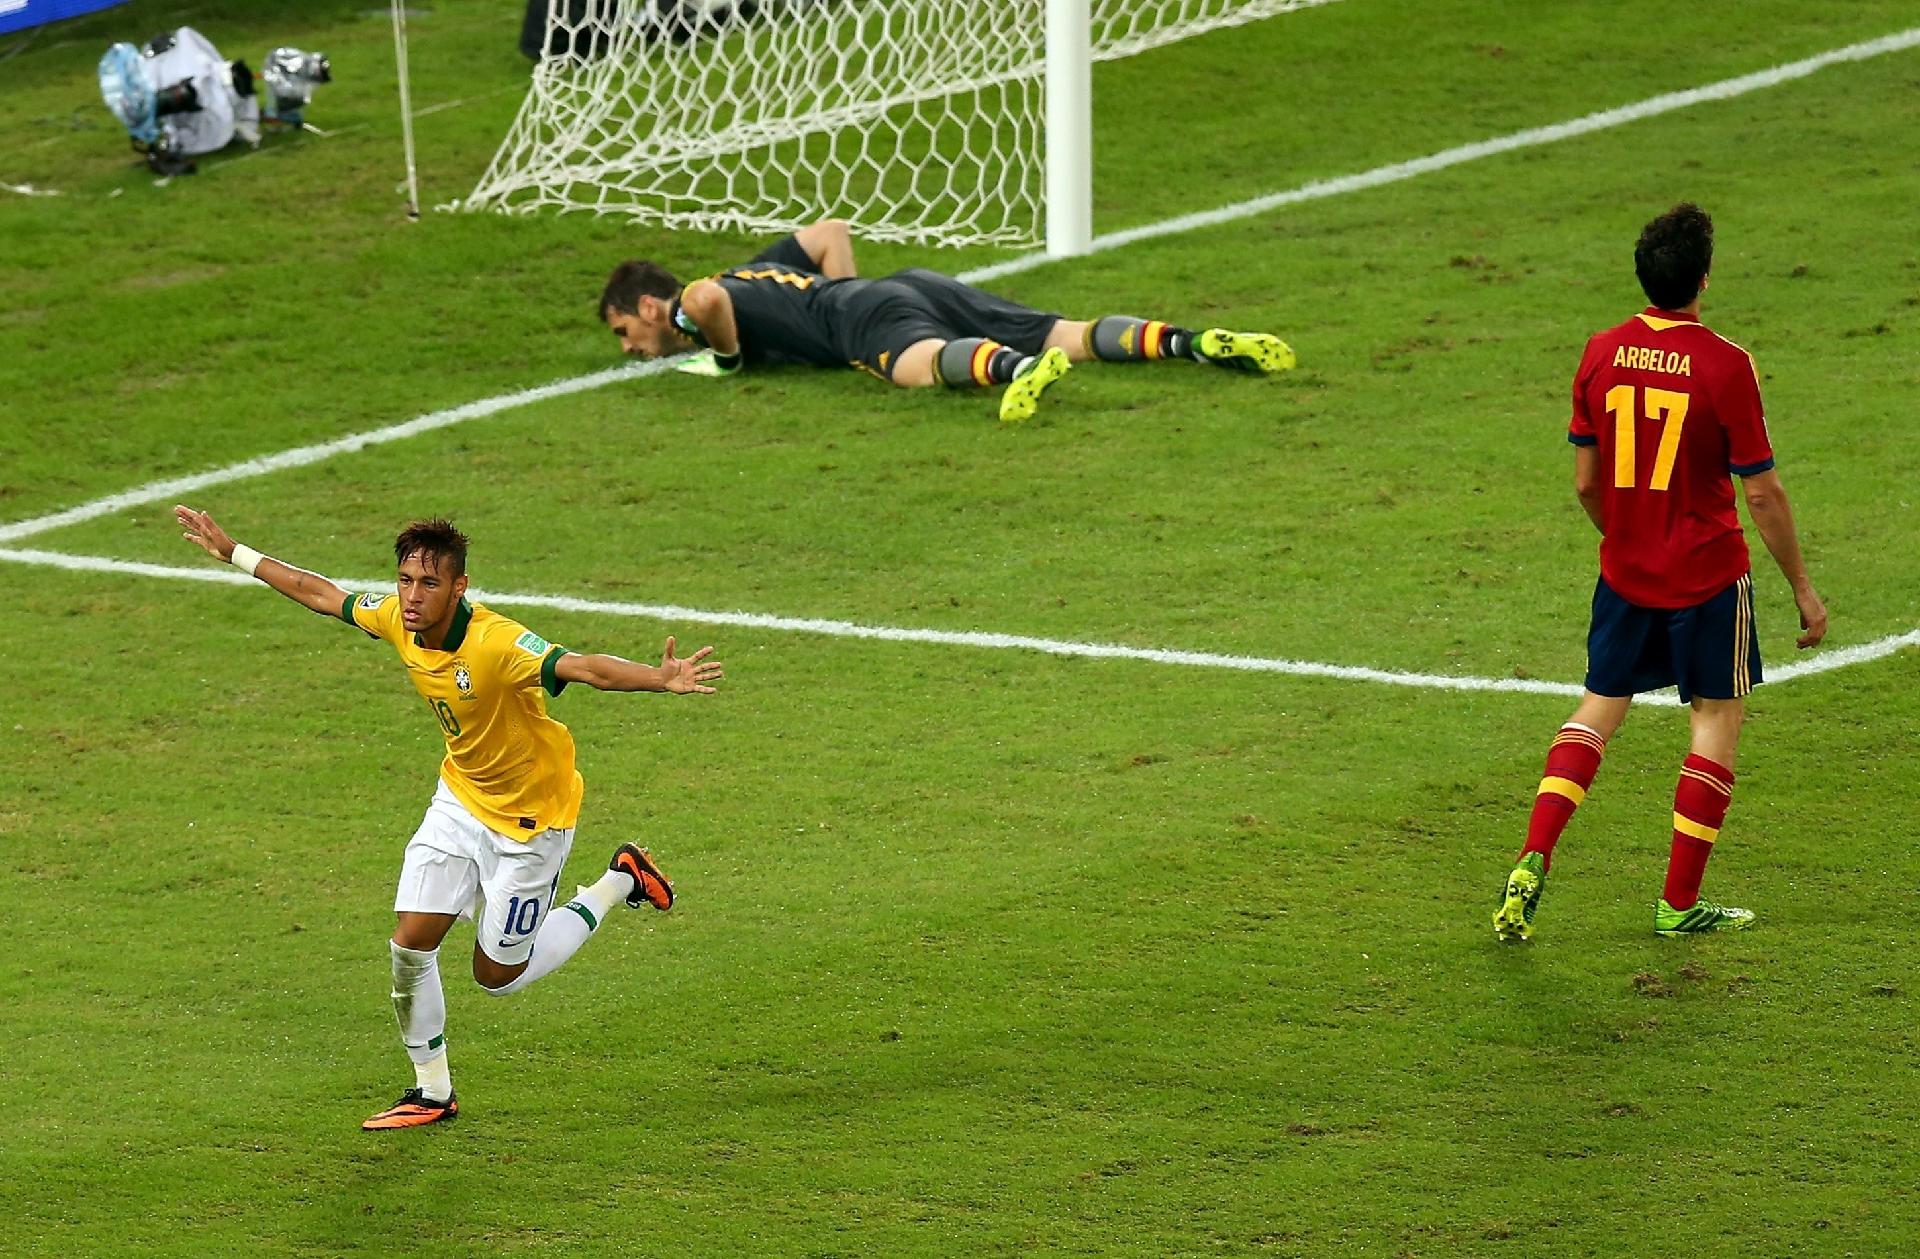 É CAMPEÃO! Brasil 3 x 0 Espanha - Melhores Momentos - Copa das  Confederações 2013 